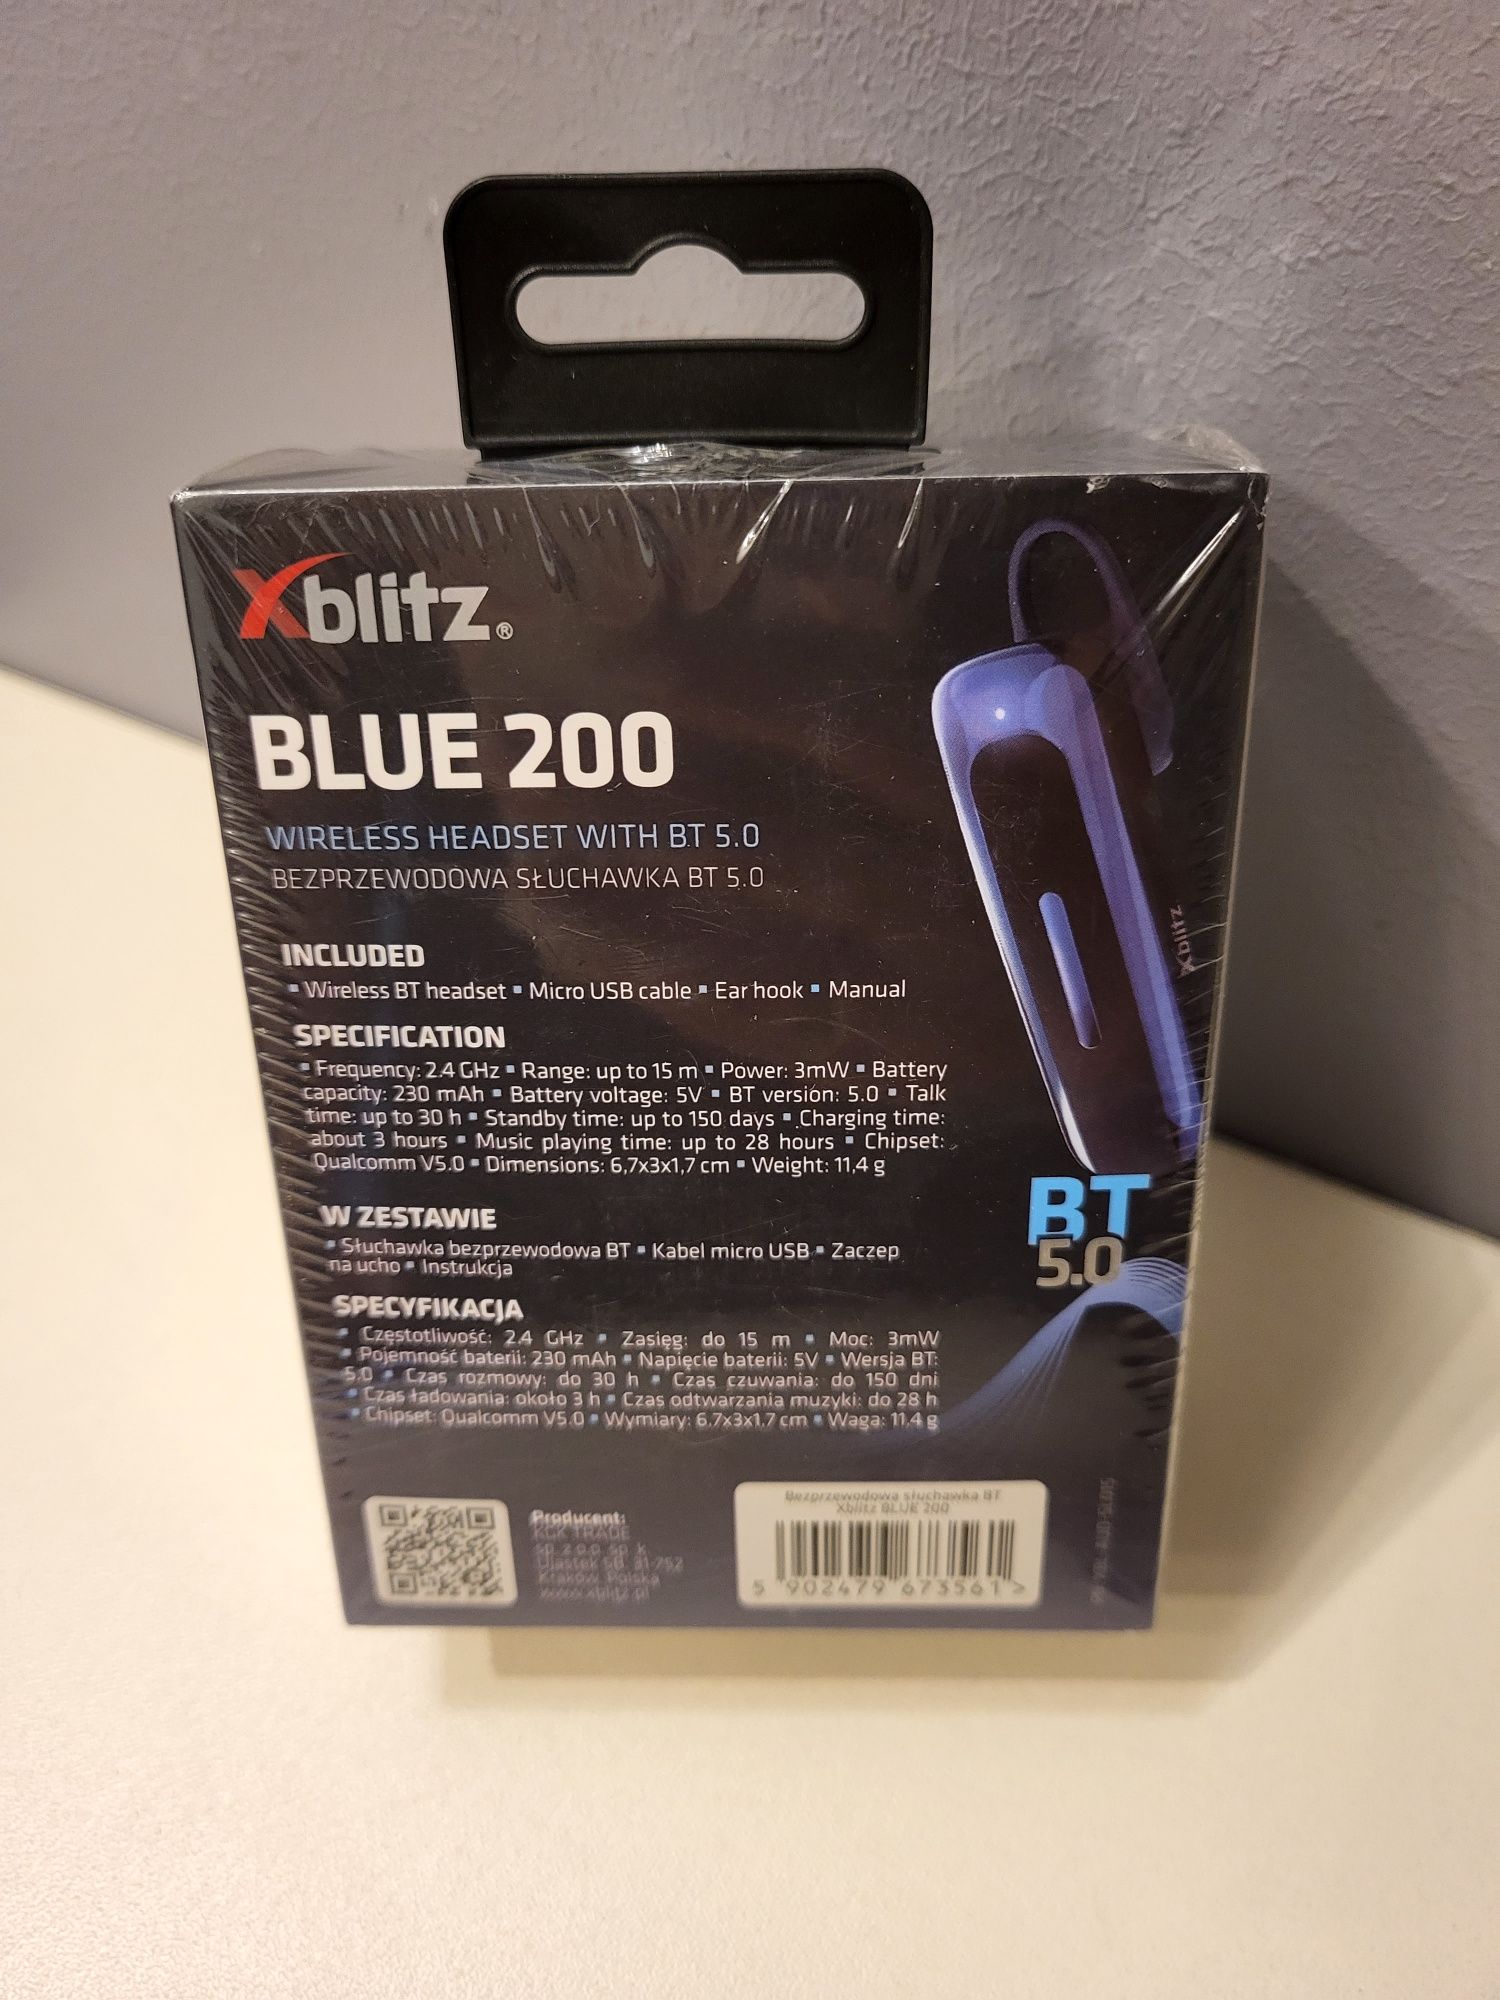 Zestaw słuchawkowy XBlitz Blue 200